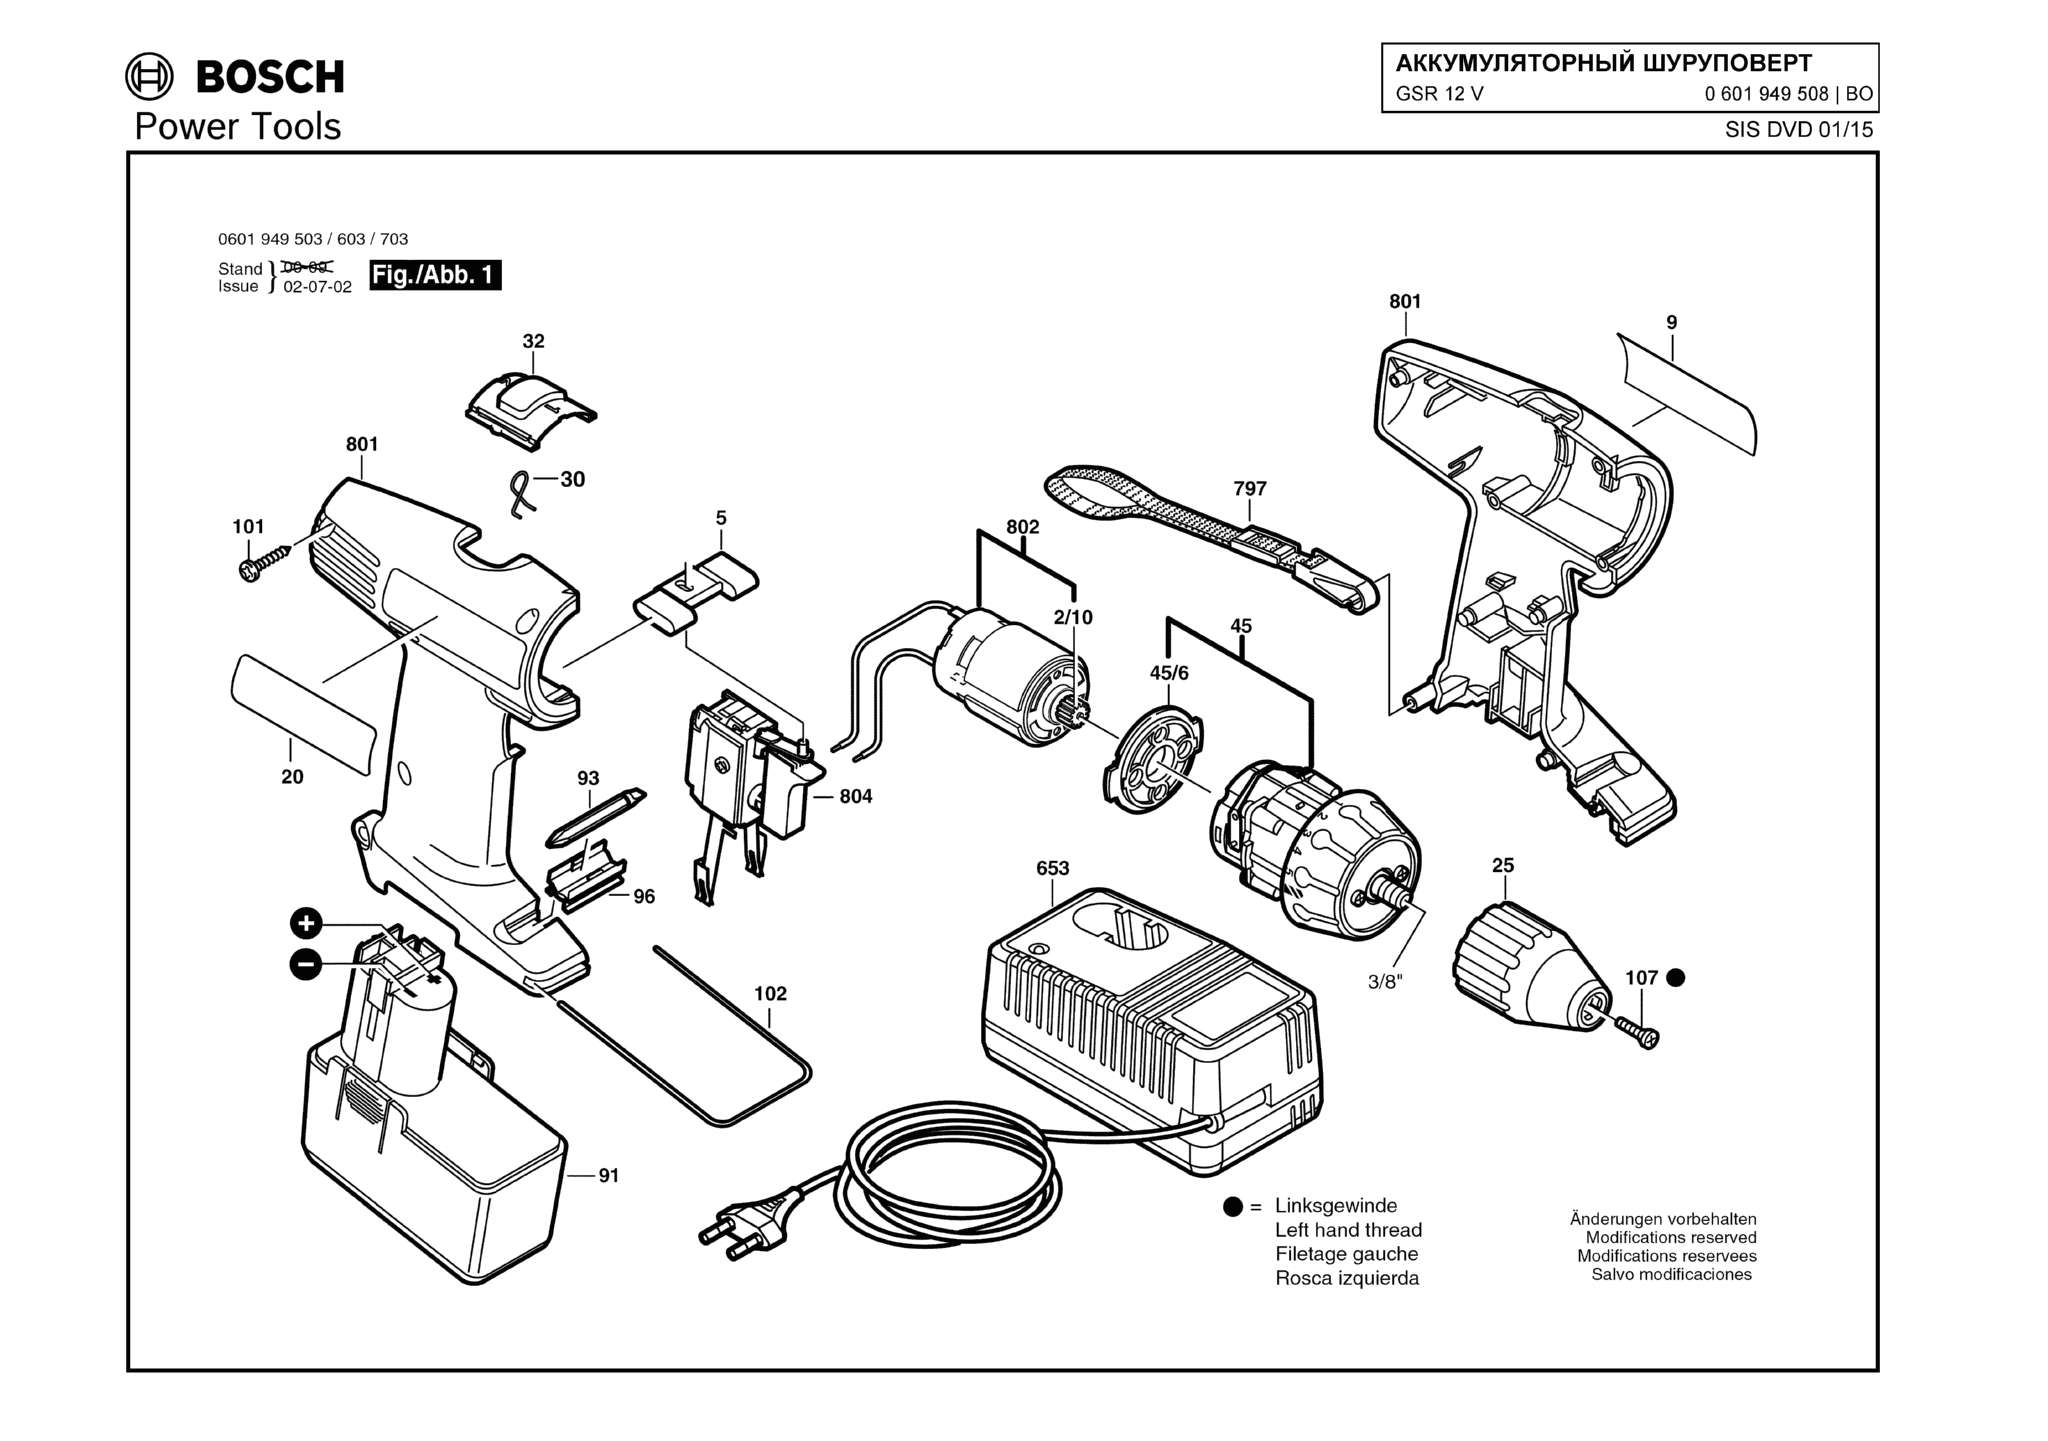 Запчасти, схема и деталировка Bosch GSR 12 V (ТИП 0601949508)